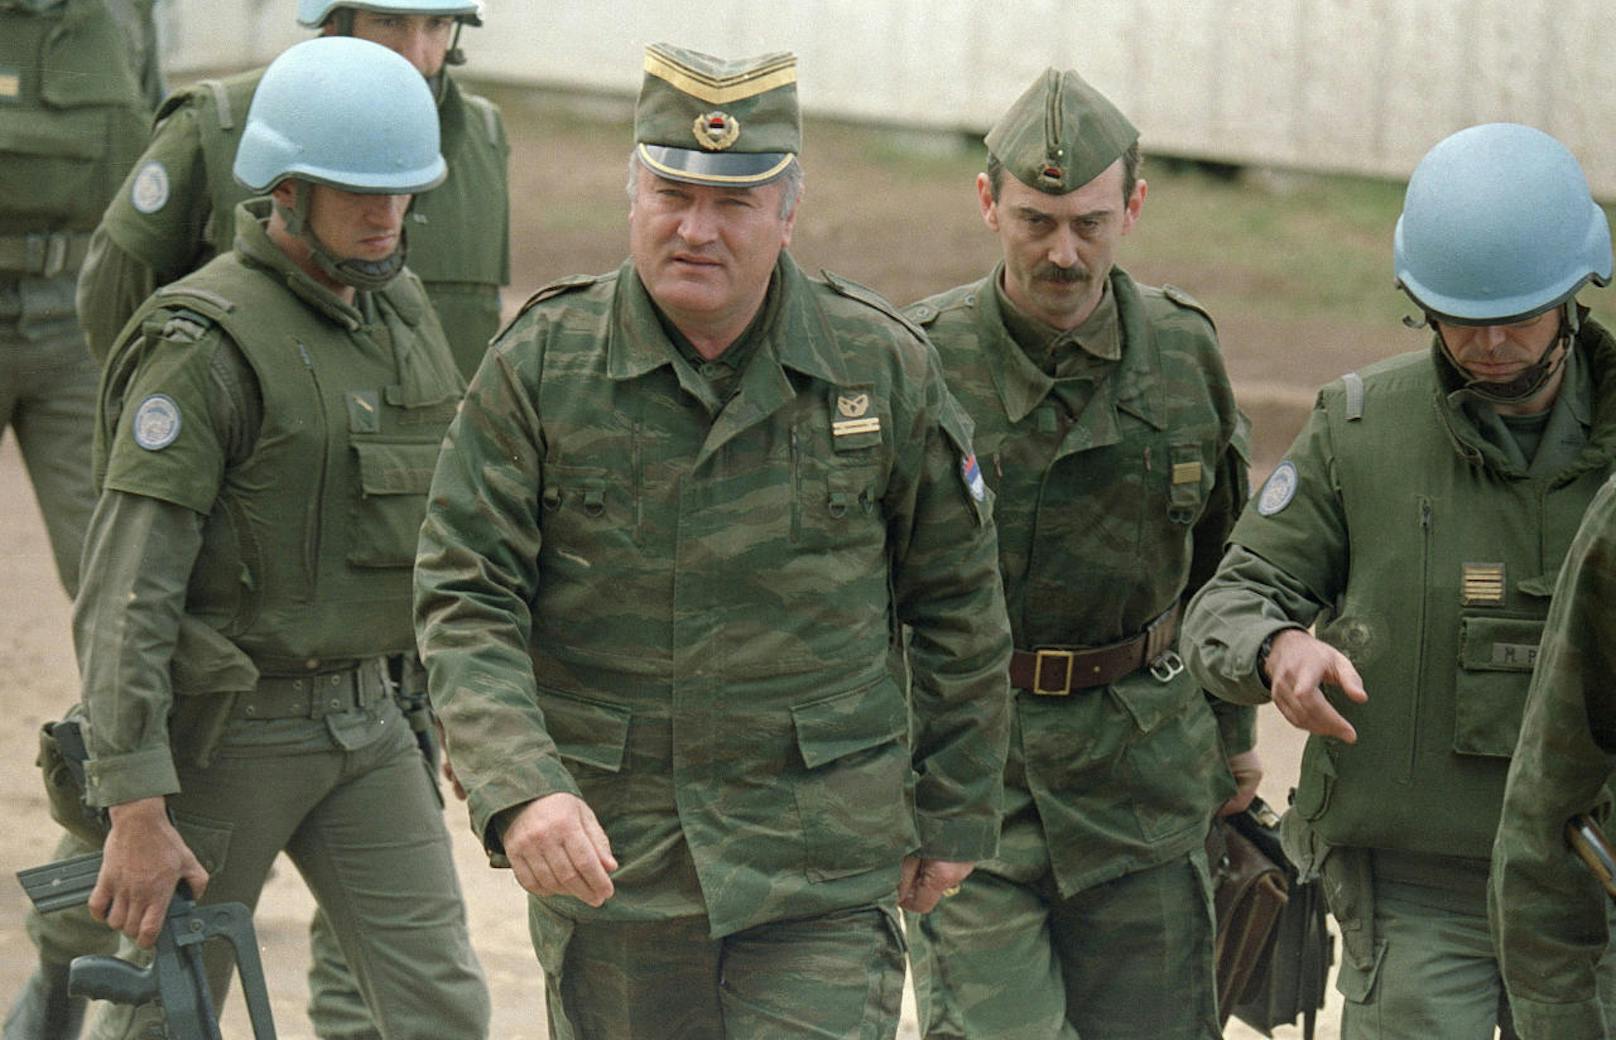 <b>22. November 2017: </b>In seinem letzten Prozess hat das UNO-Kriegsverbrechertribunal den bosnisch-serbischen Ex-General Ratko Mladic (75) des Völkermordes schuldig gesprochen. Die schwerwiegendsten Vorwürfe: die über drei Jahre dauernde Belagerung von Sarajevo mit tausenden Todesopfern. Misshandlung von Gefangenen in Internierungslagern. Terrorkampagne gegen Kroaten und Muslime in bosnischen Kommunen, die Geiselnahme von UNO-Soldaten sowie der Völkermord von Srebrenica. Mladic droht lebenslange Haft, er hat Berufung eingelegt.

<b>Mehr Infos: </b> <a href="https://www.heute.at/welt/news/story/Kriegsverbrecher-Prozess-Urteil-ueber-Ratko-Mladic-Srebrenica-43722526">Mladic des Völkermords schuldig gesprochen</a>